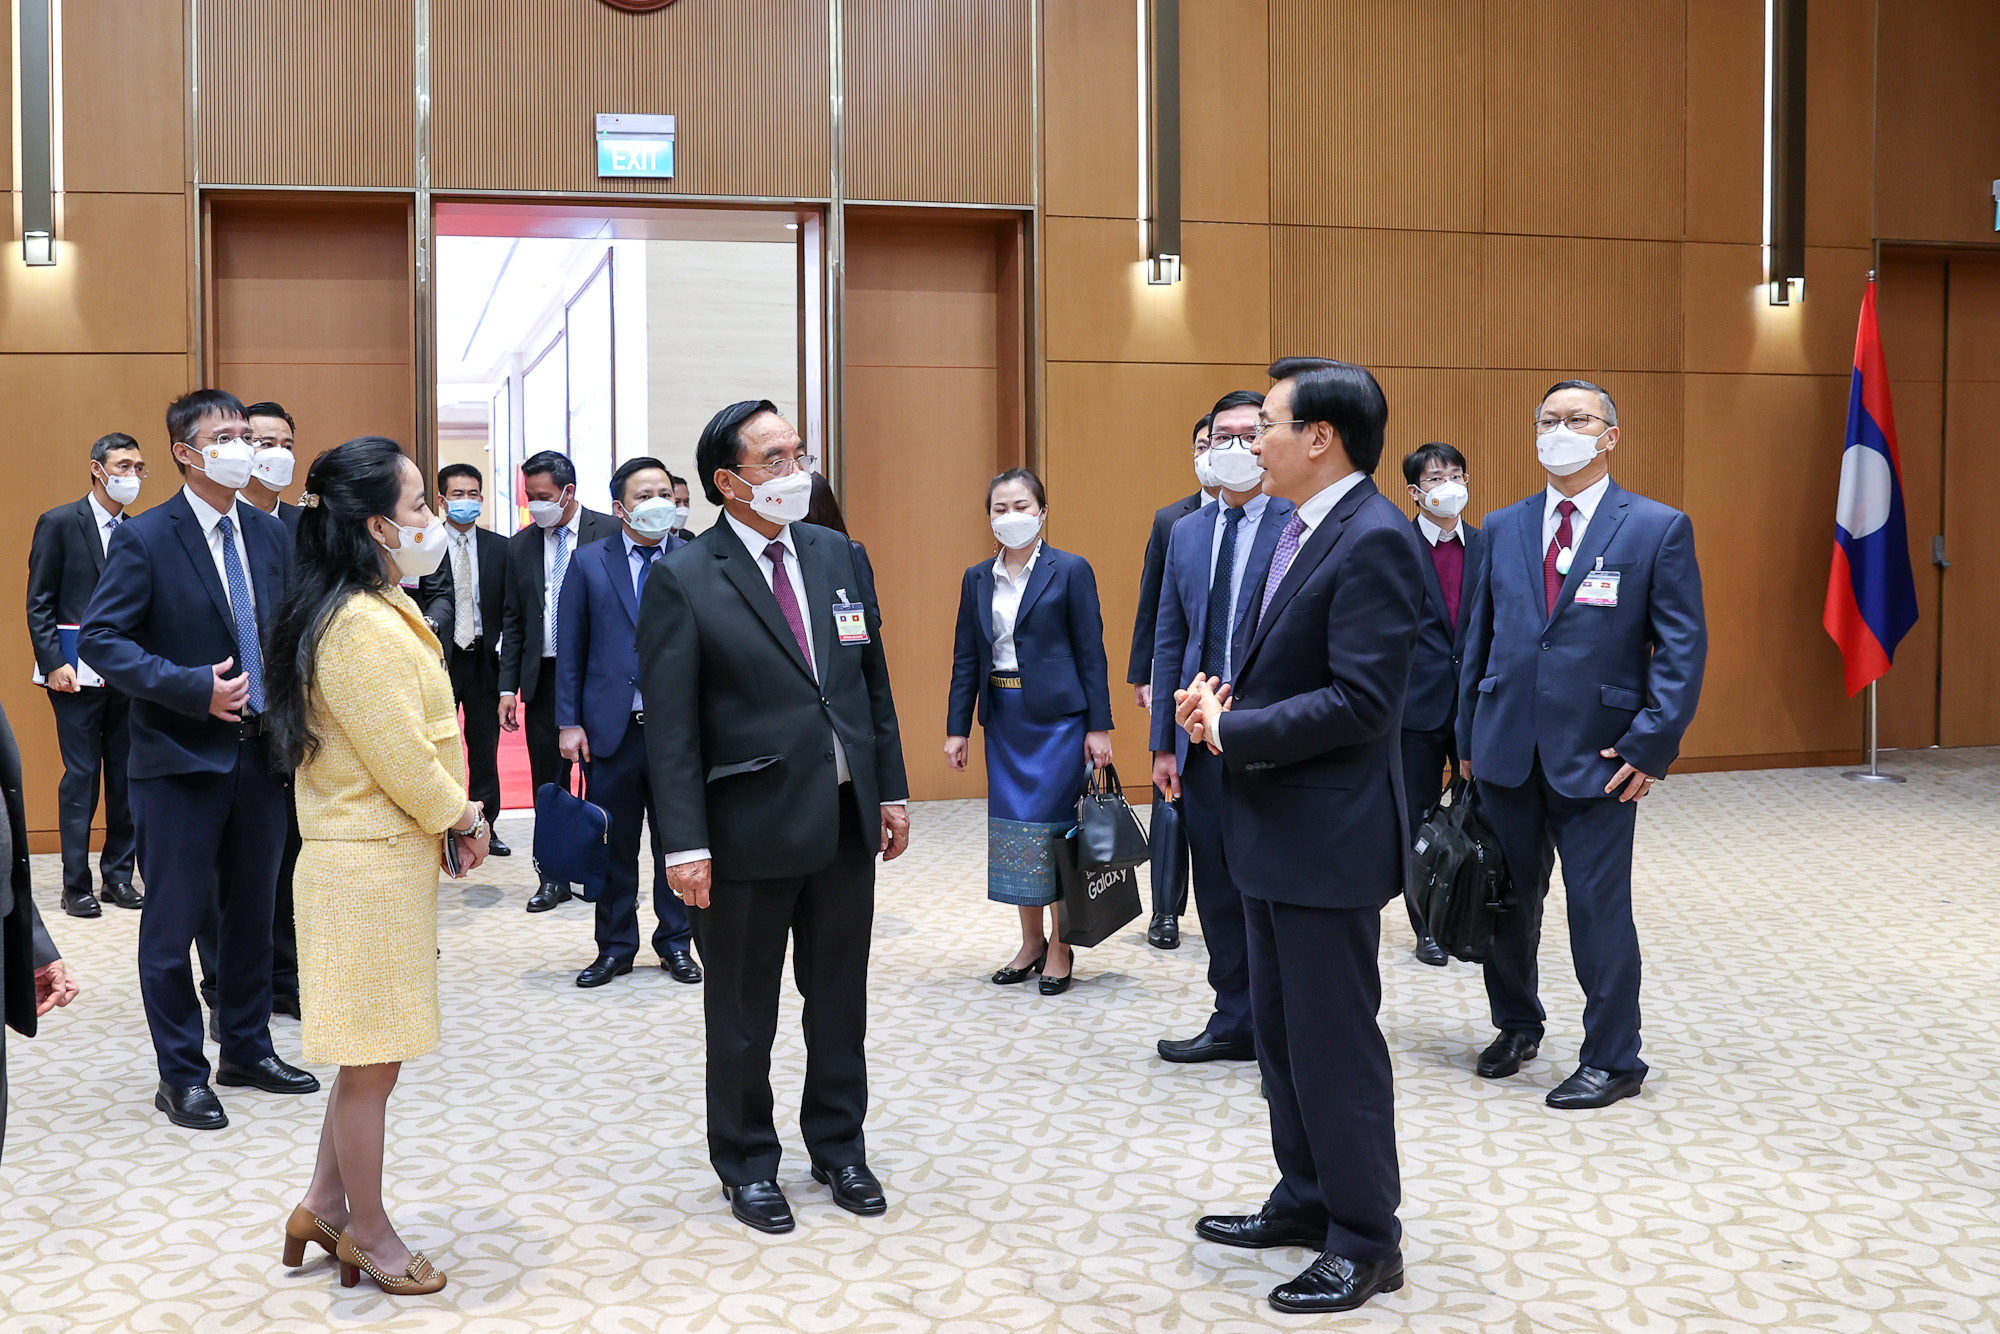 Chùm ảnh: Bộ trưởng, Chủ nhiệm Văn phòng Phủ Thủ tướng Lào thăm và làm việc tại trụ sở VPCP Việt Nam - Ảnh 4.